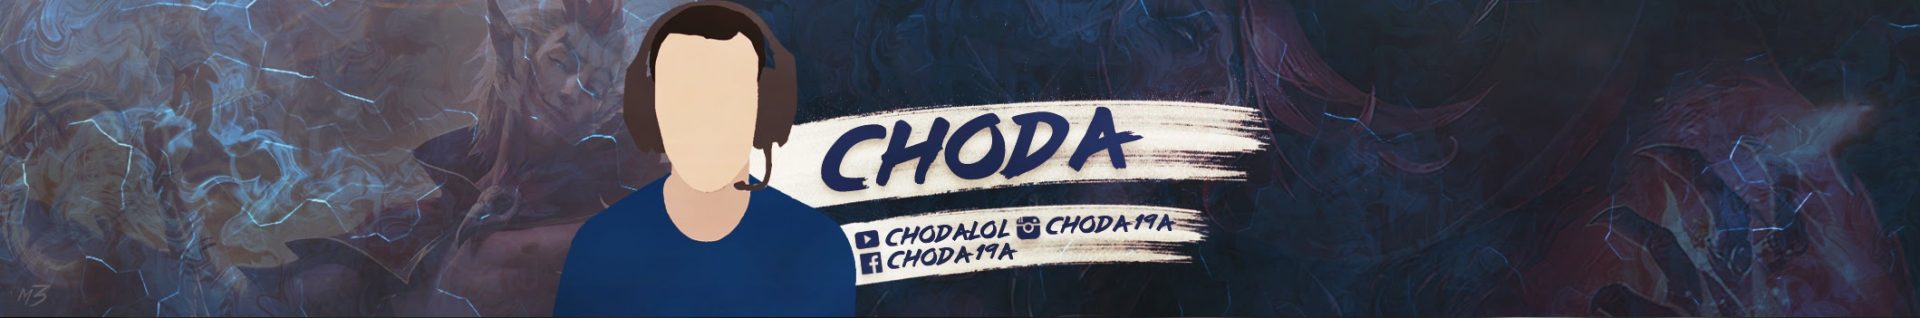 Choda